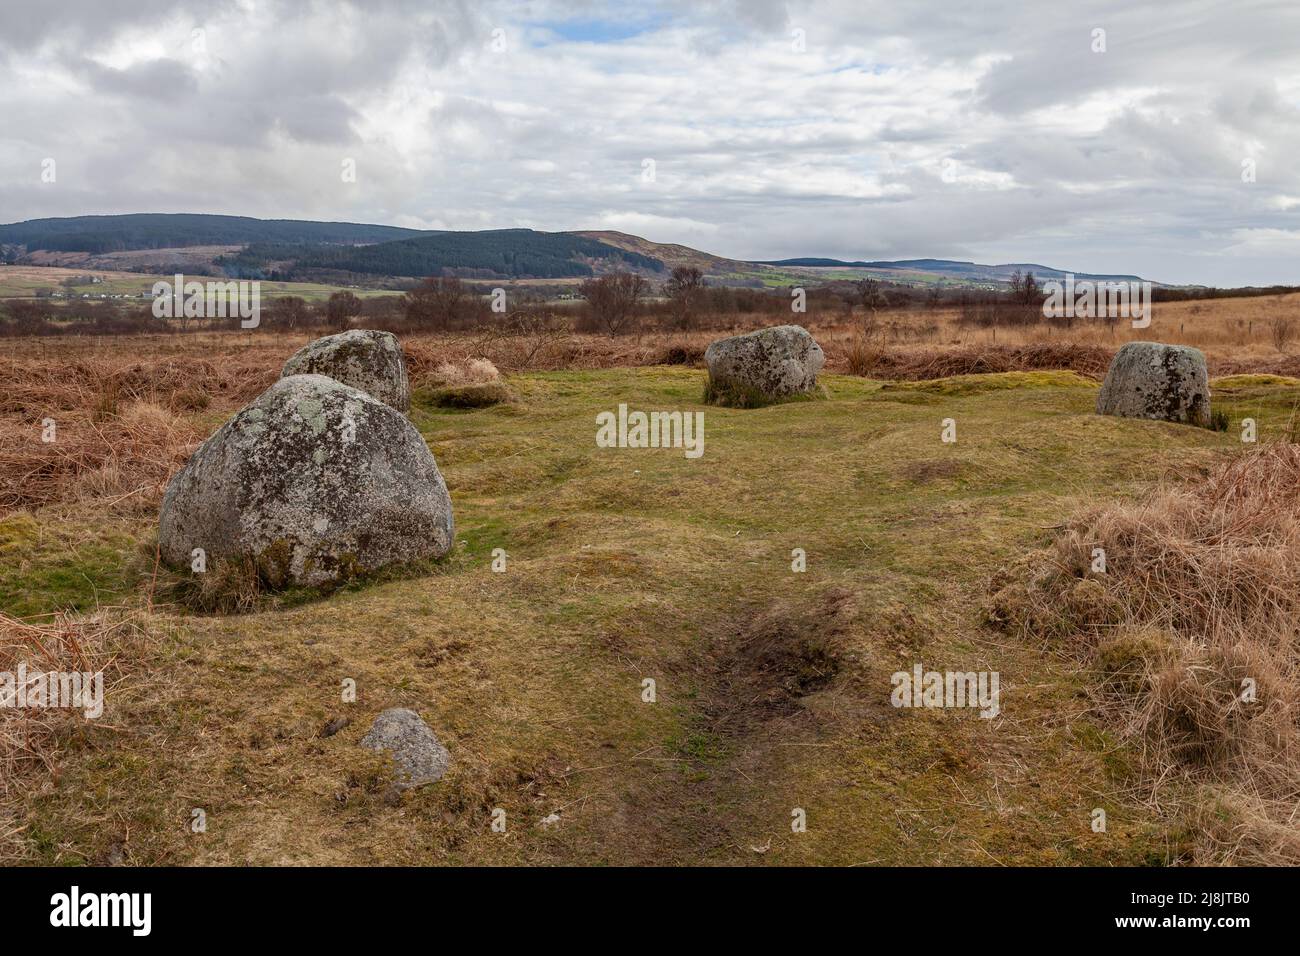 Machrie Moor Stones debout et cercles de pierre, île d'Arran, Écosse - cru à ce jour à la fin du néolithique au début de l'âge de bronze Banque D'Images